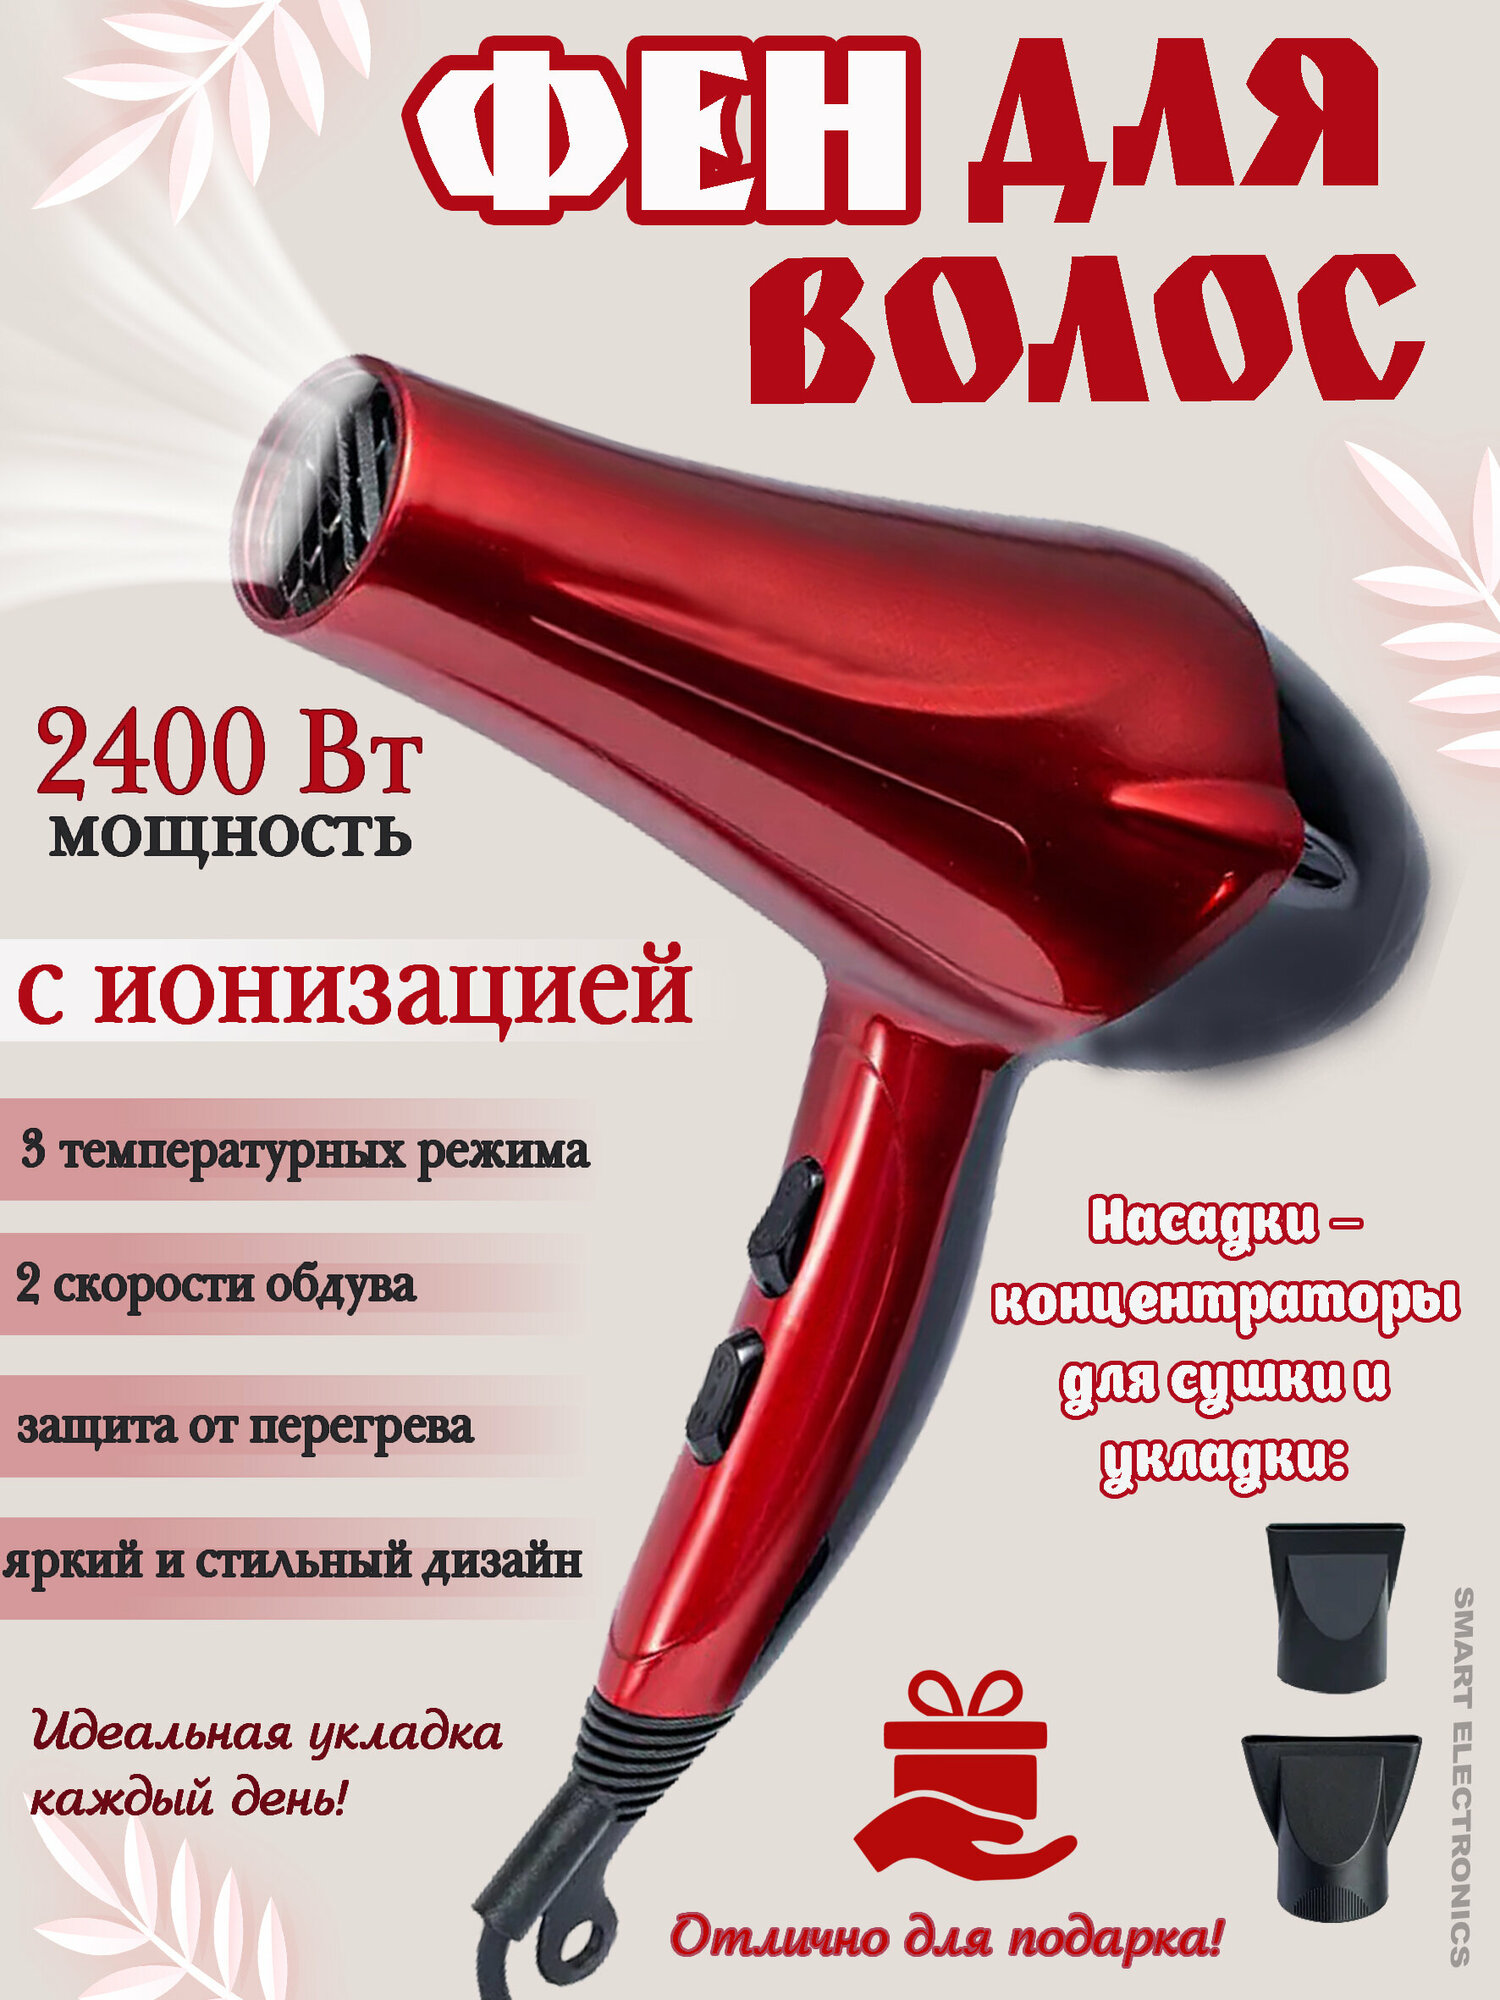 Фен для волос профессиональный с насадками и ионизацией, фен для укладки волос, концентратор, 2400 Вт, защита от перегрева; красный